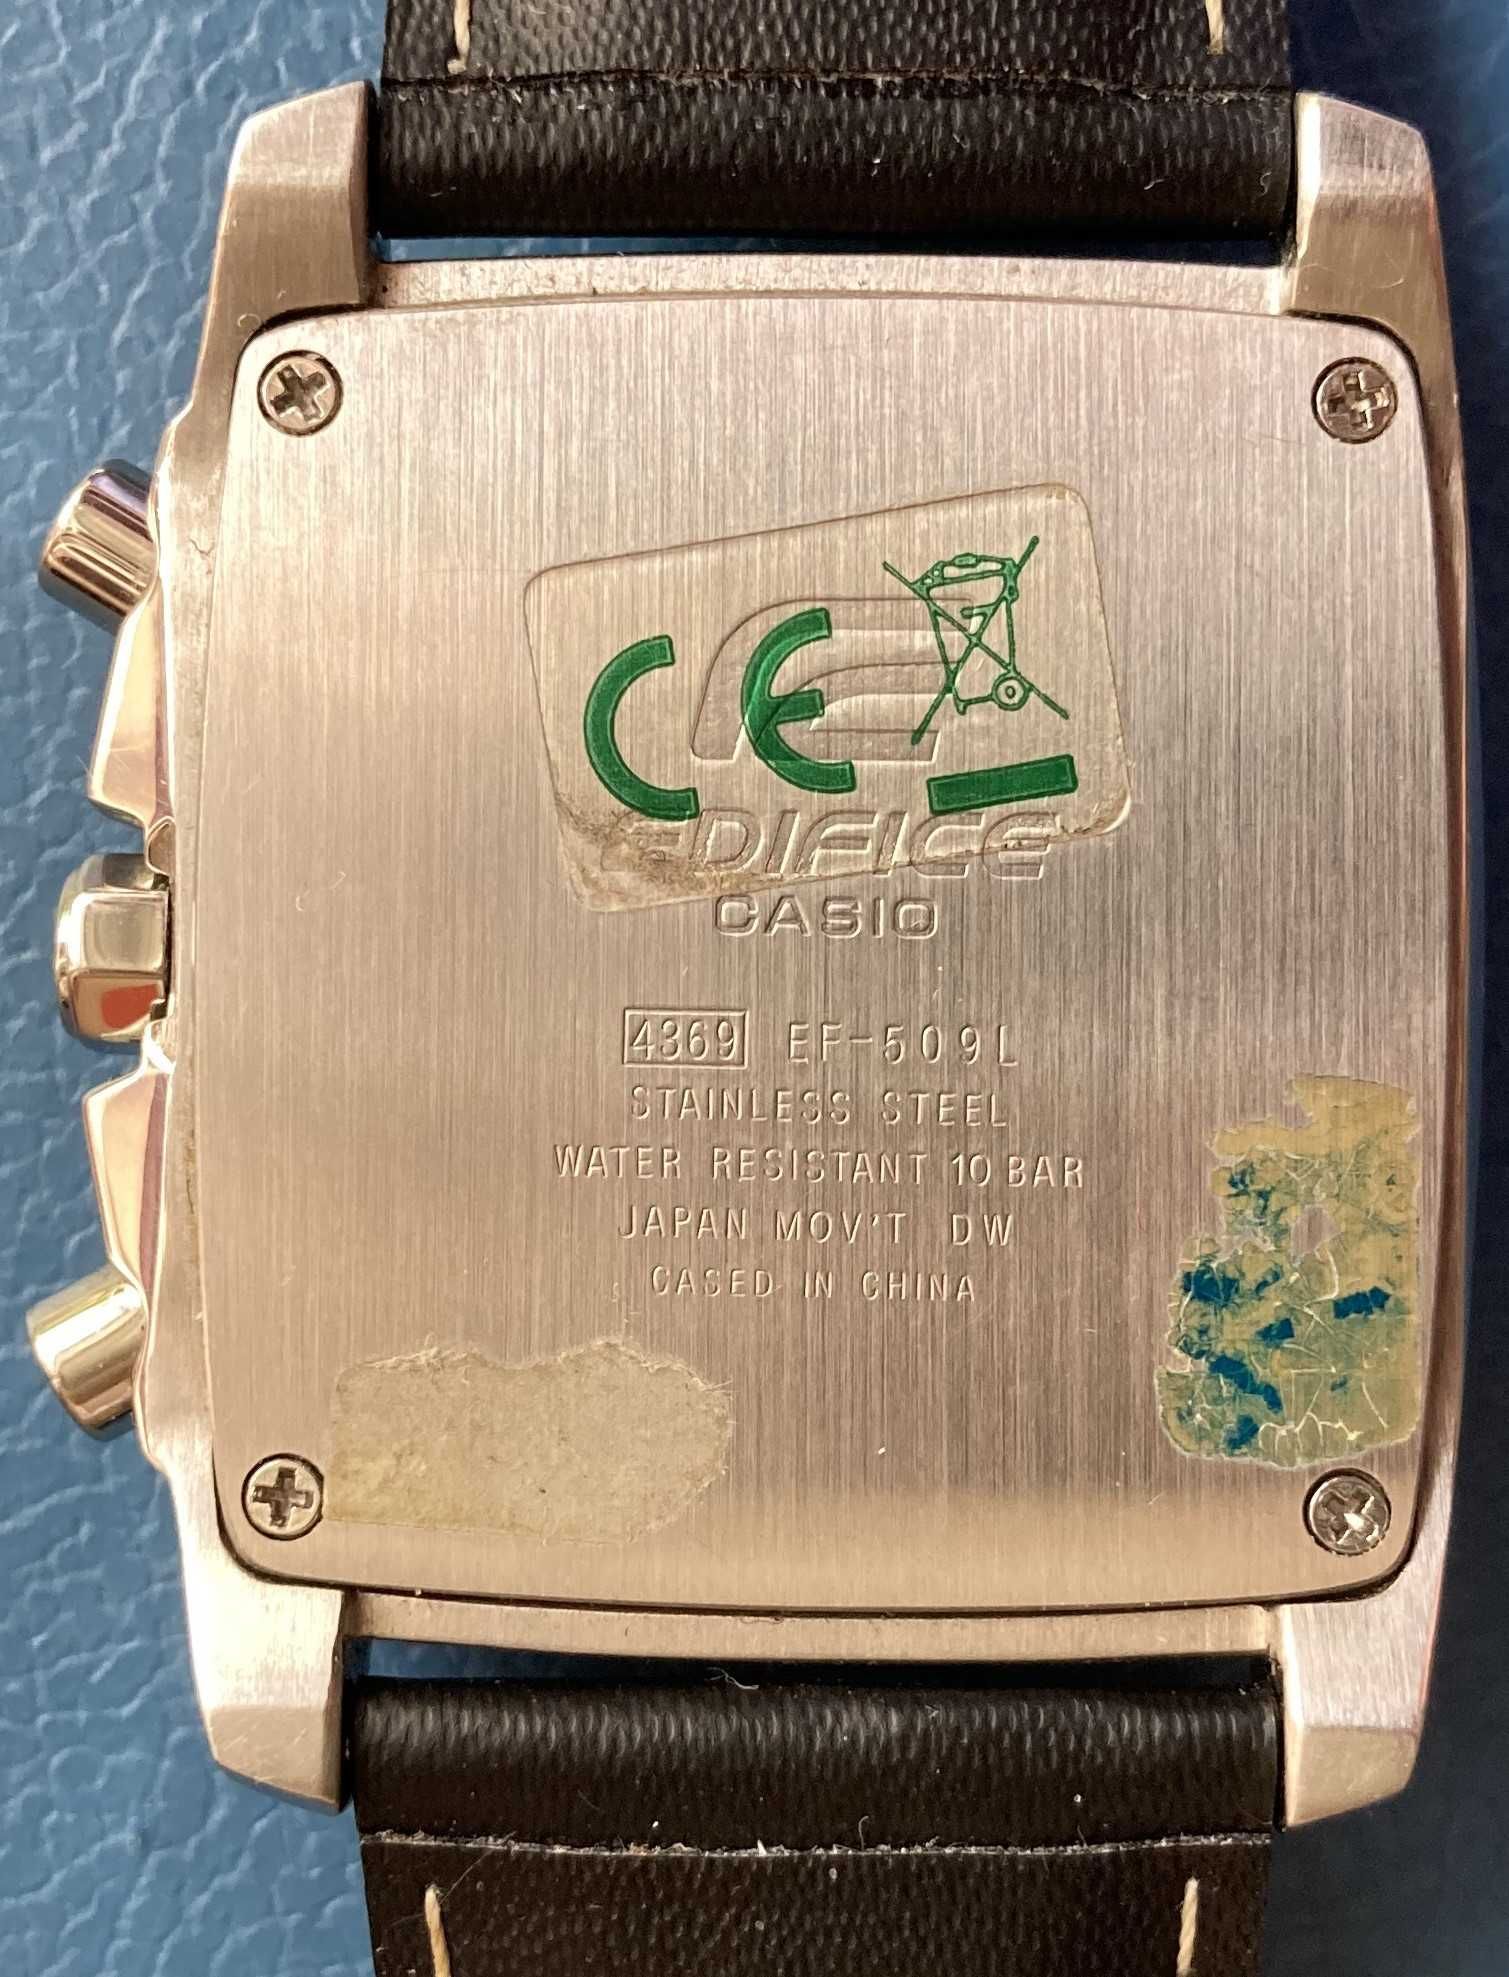 Хронограф Casio Edifice EF-509 L, состояние нового